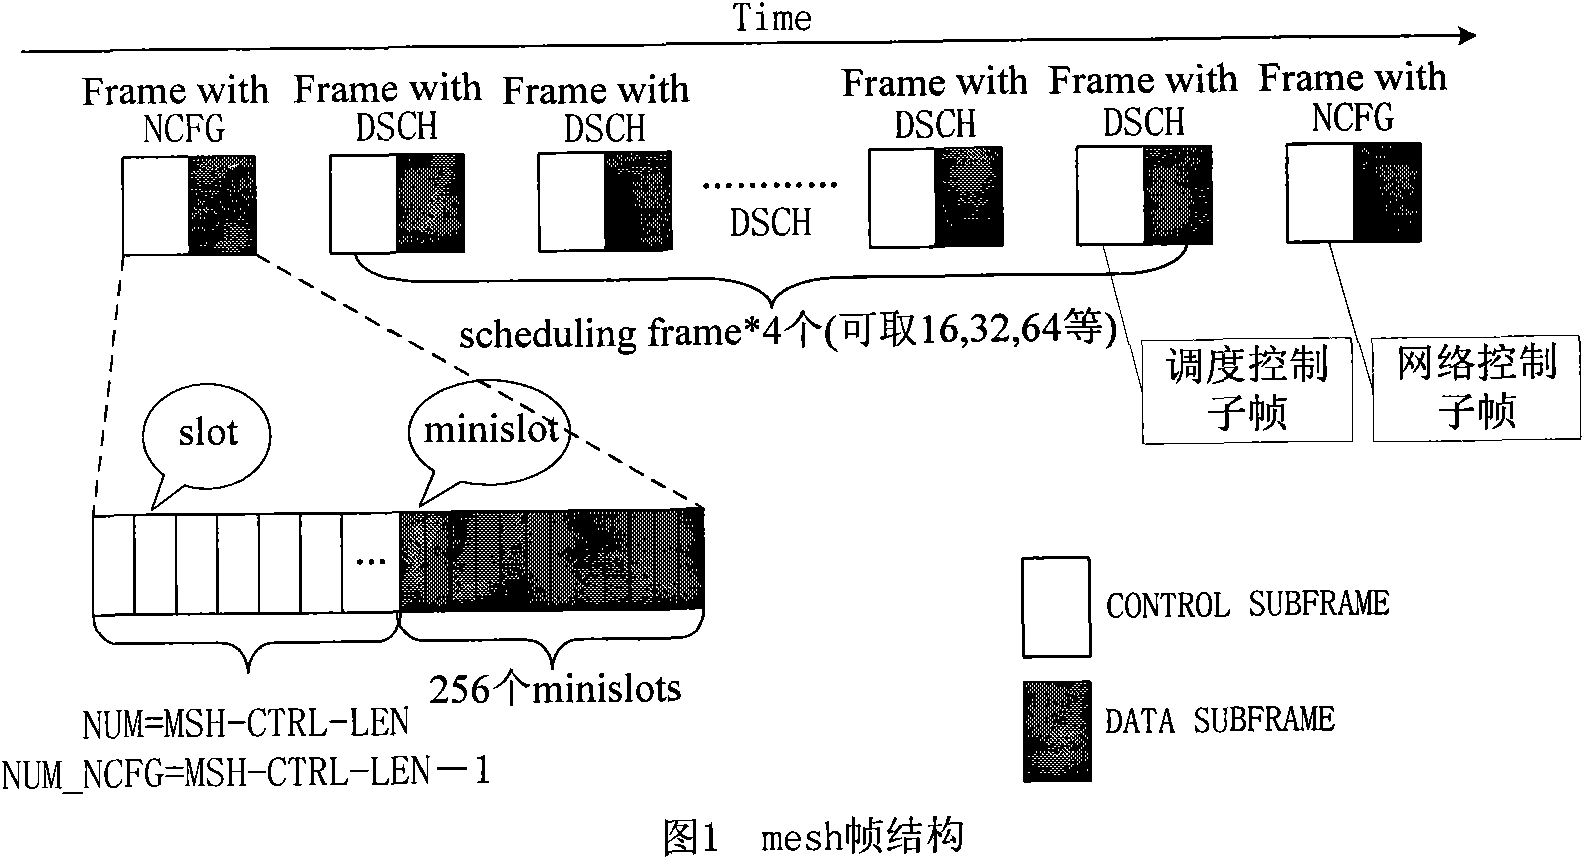 Three-way handshaking method in Mesh network based on IEEE802.16